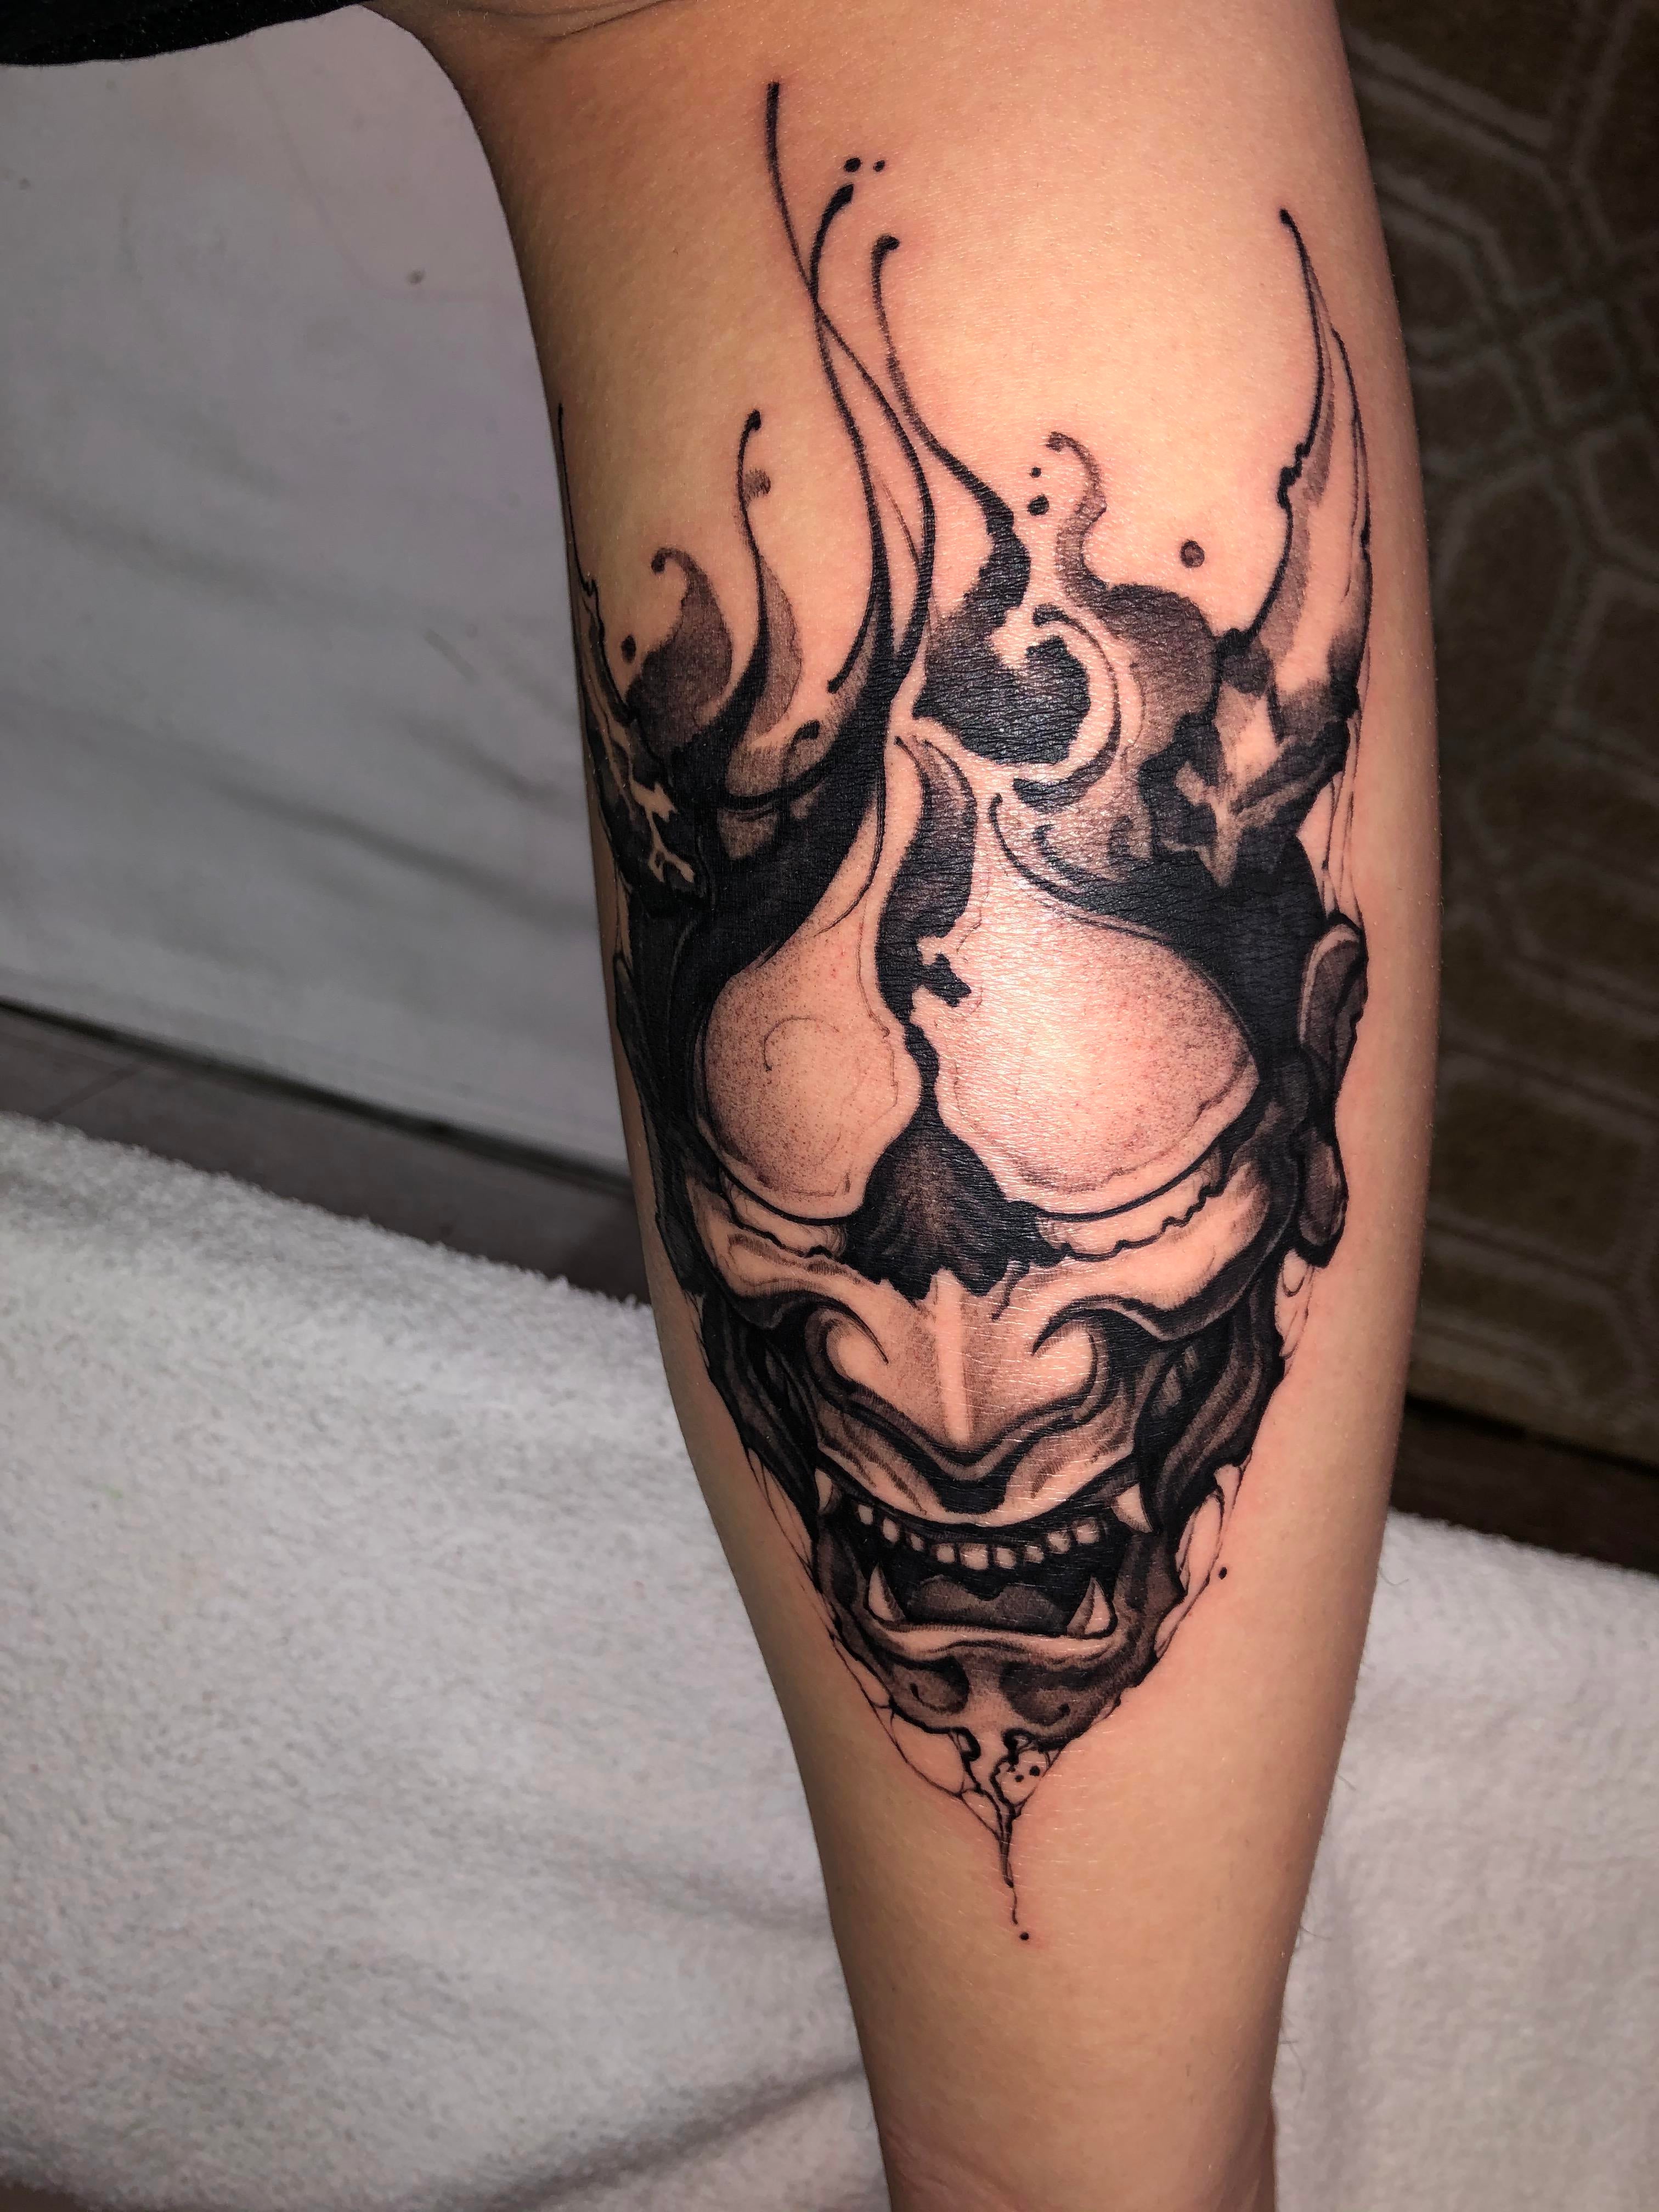 Hình tattoo mặt quỷ đẹp trắng đen